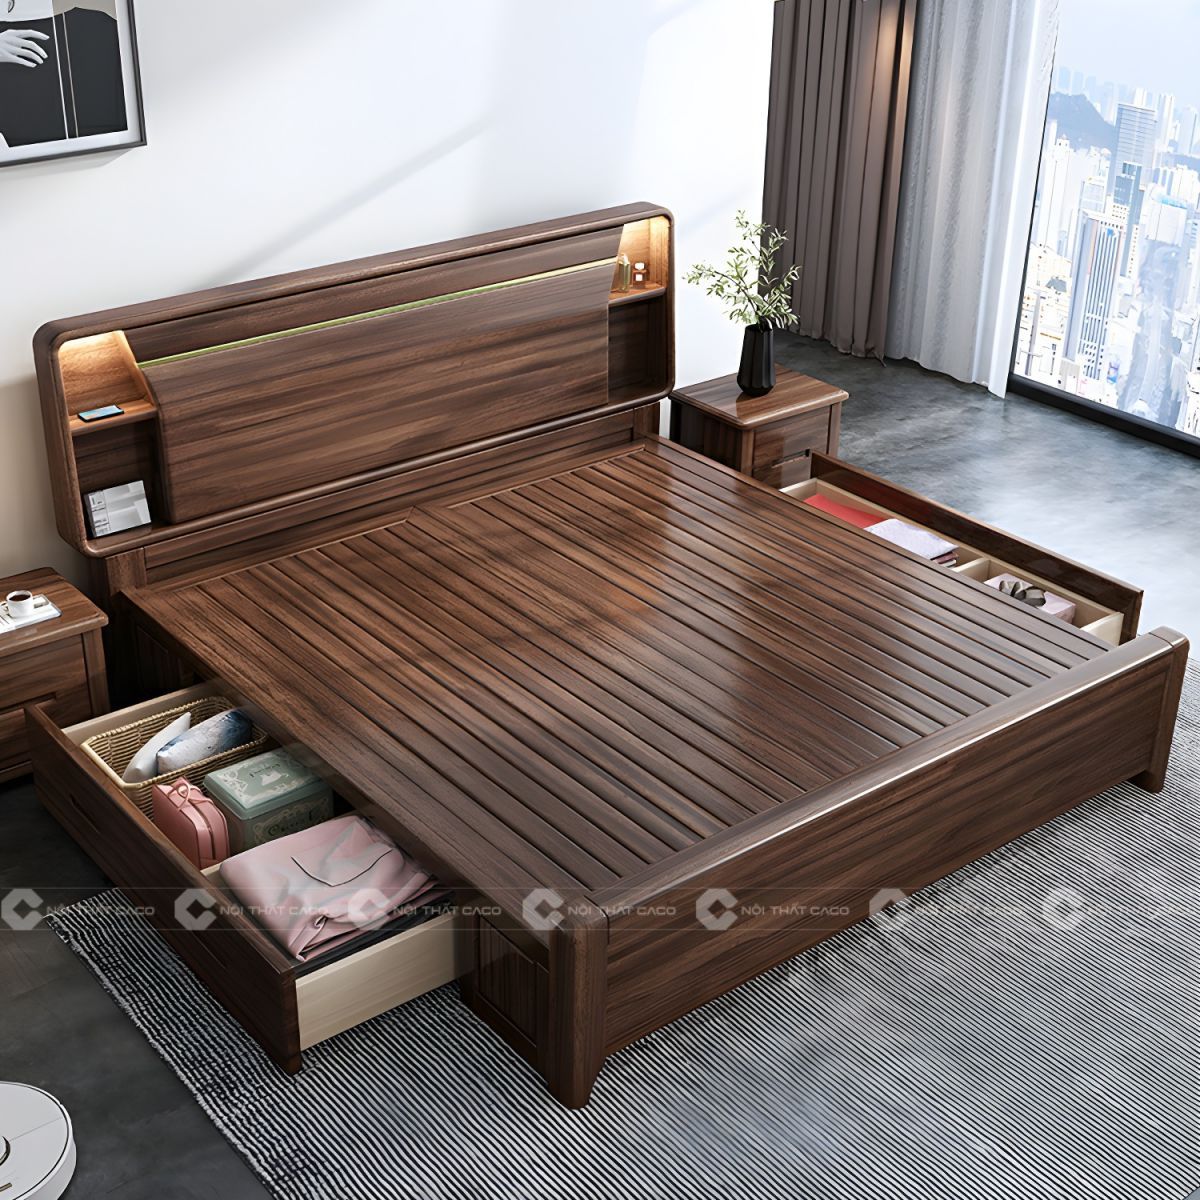 Giường ngủ gỗ tự nhiên có hộc kéo tối ưu không gian